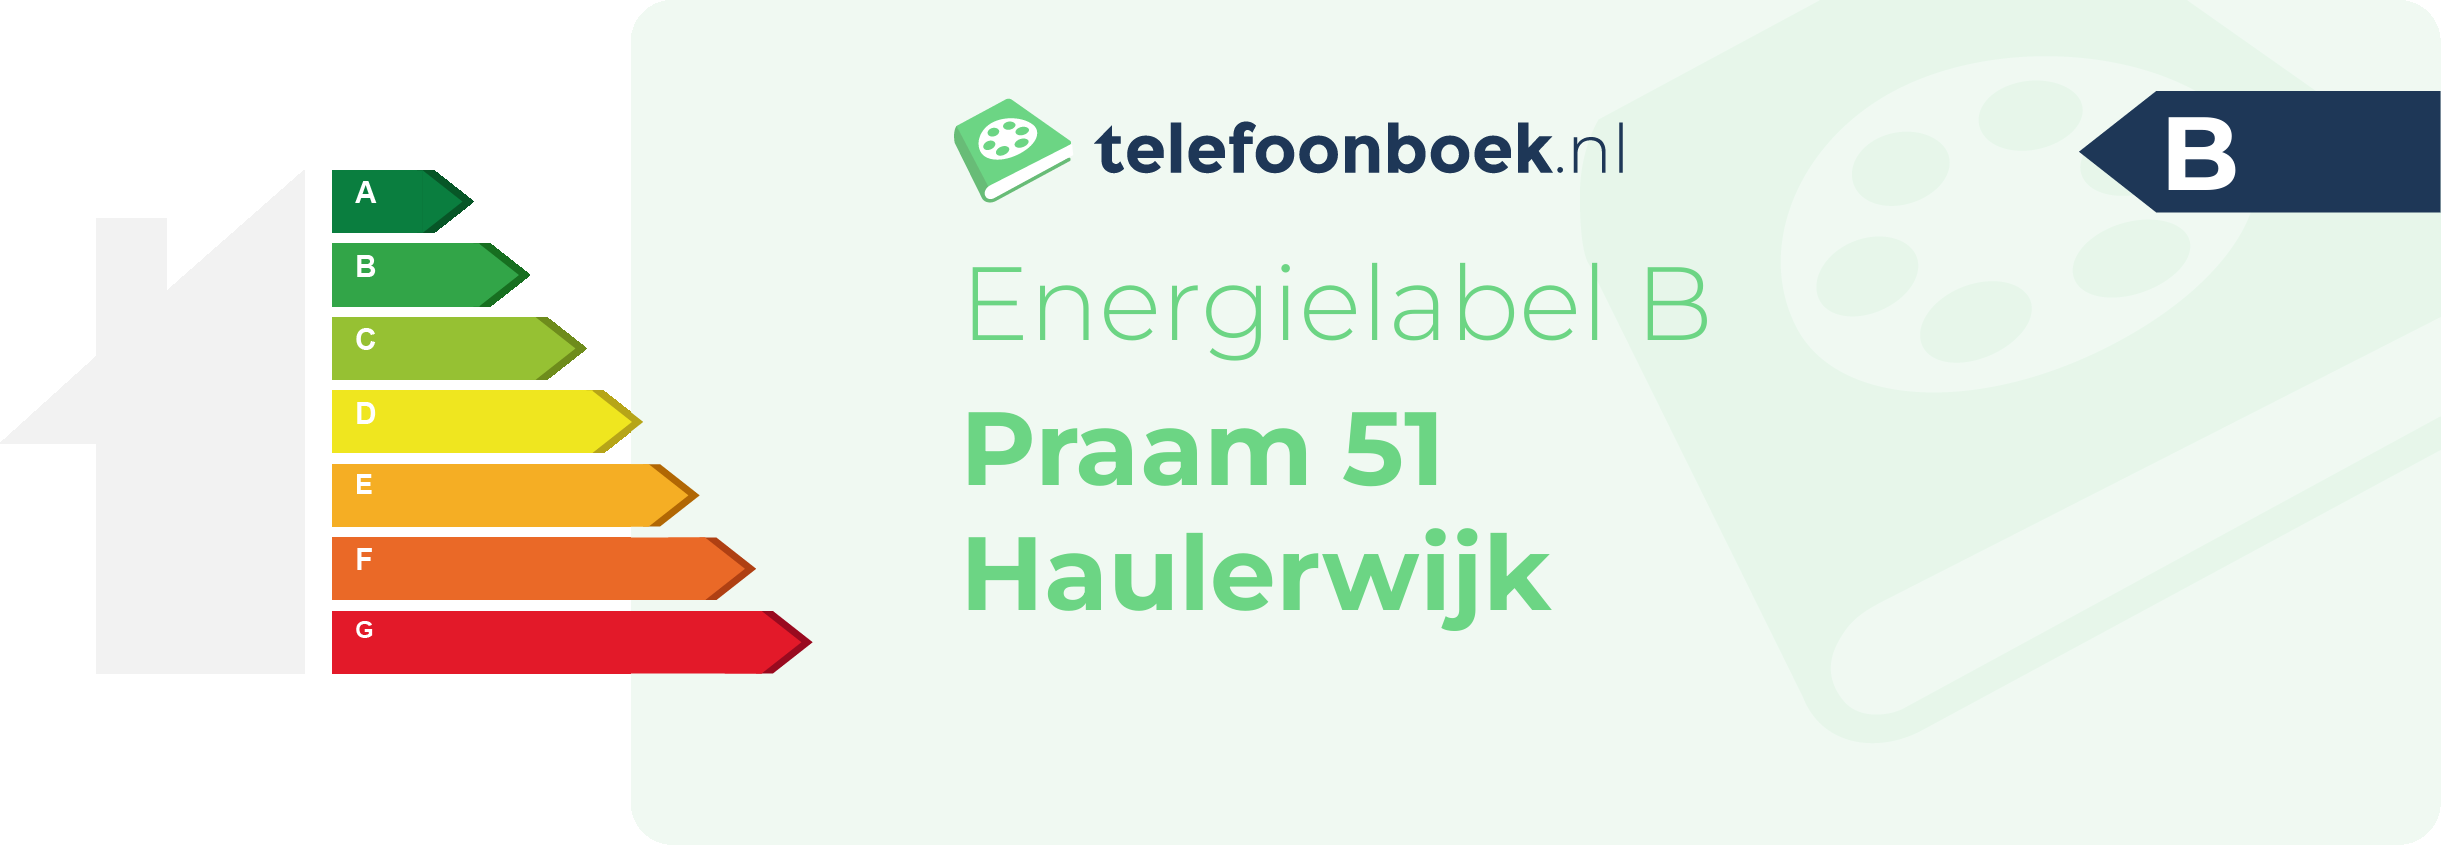 Energielabel Praam 51 Haulerwijk